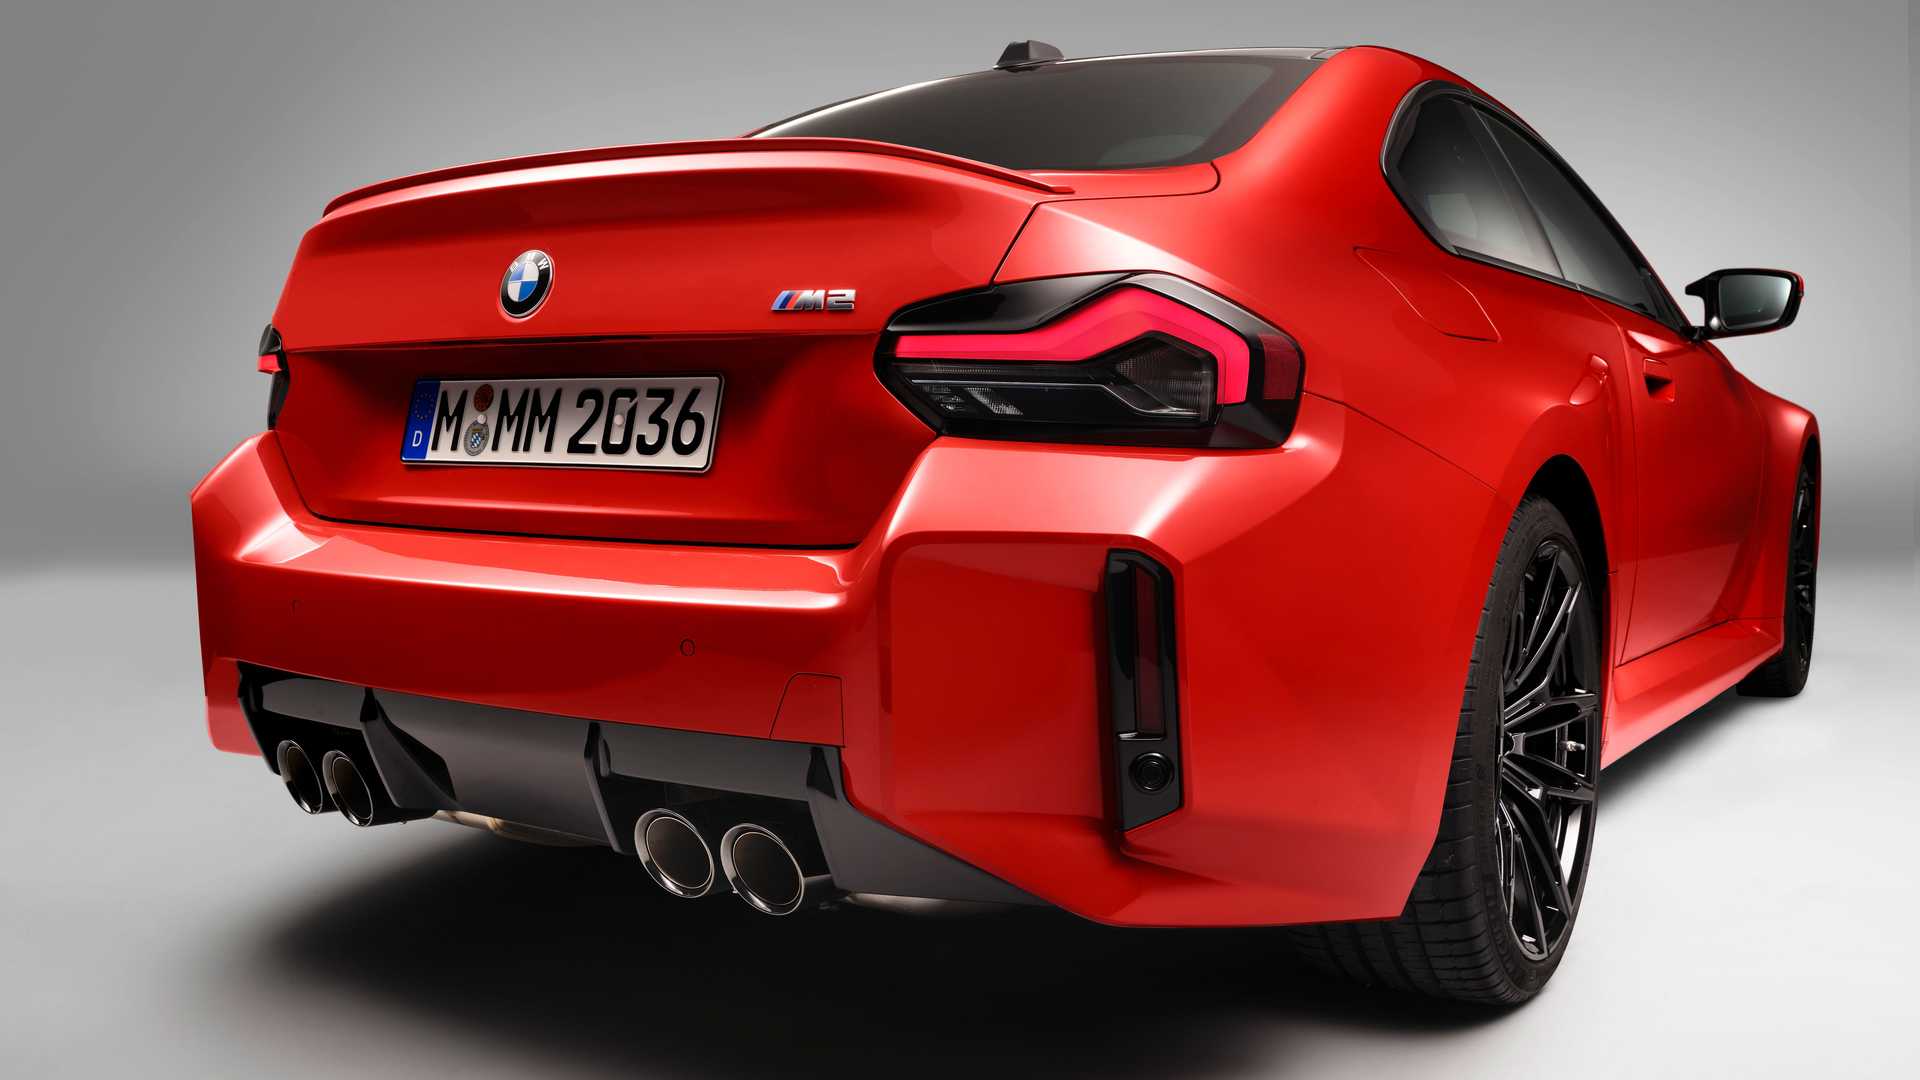 Yeni 2023 BMW M2 tanıtıldı: Yeni tasarım ve 460 hp güç